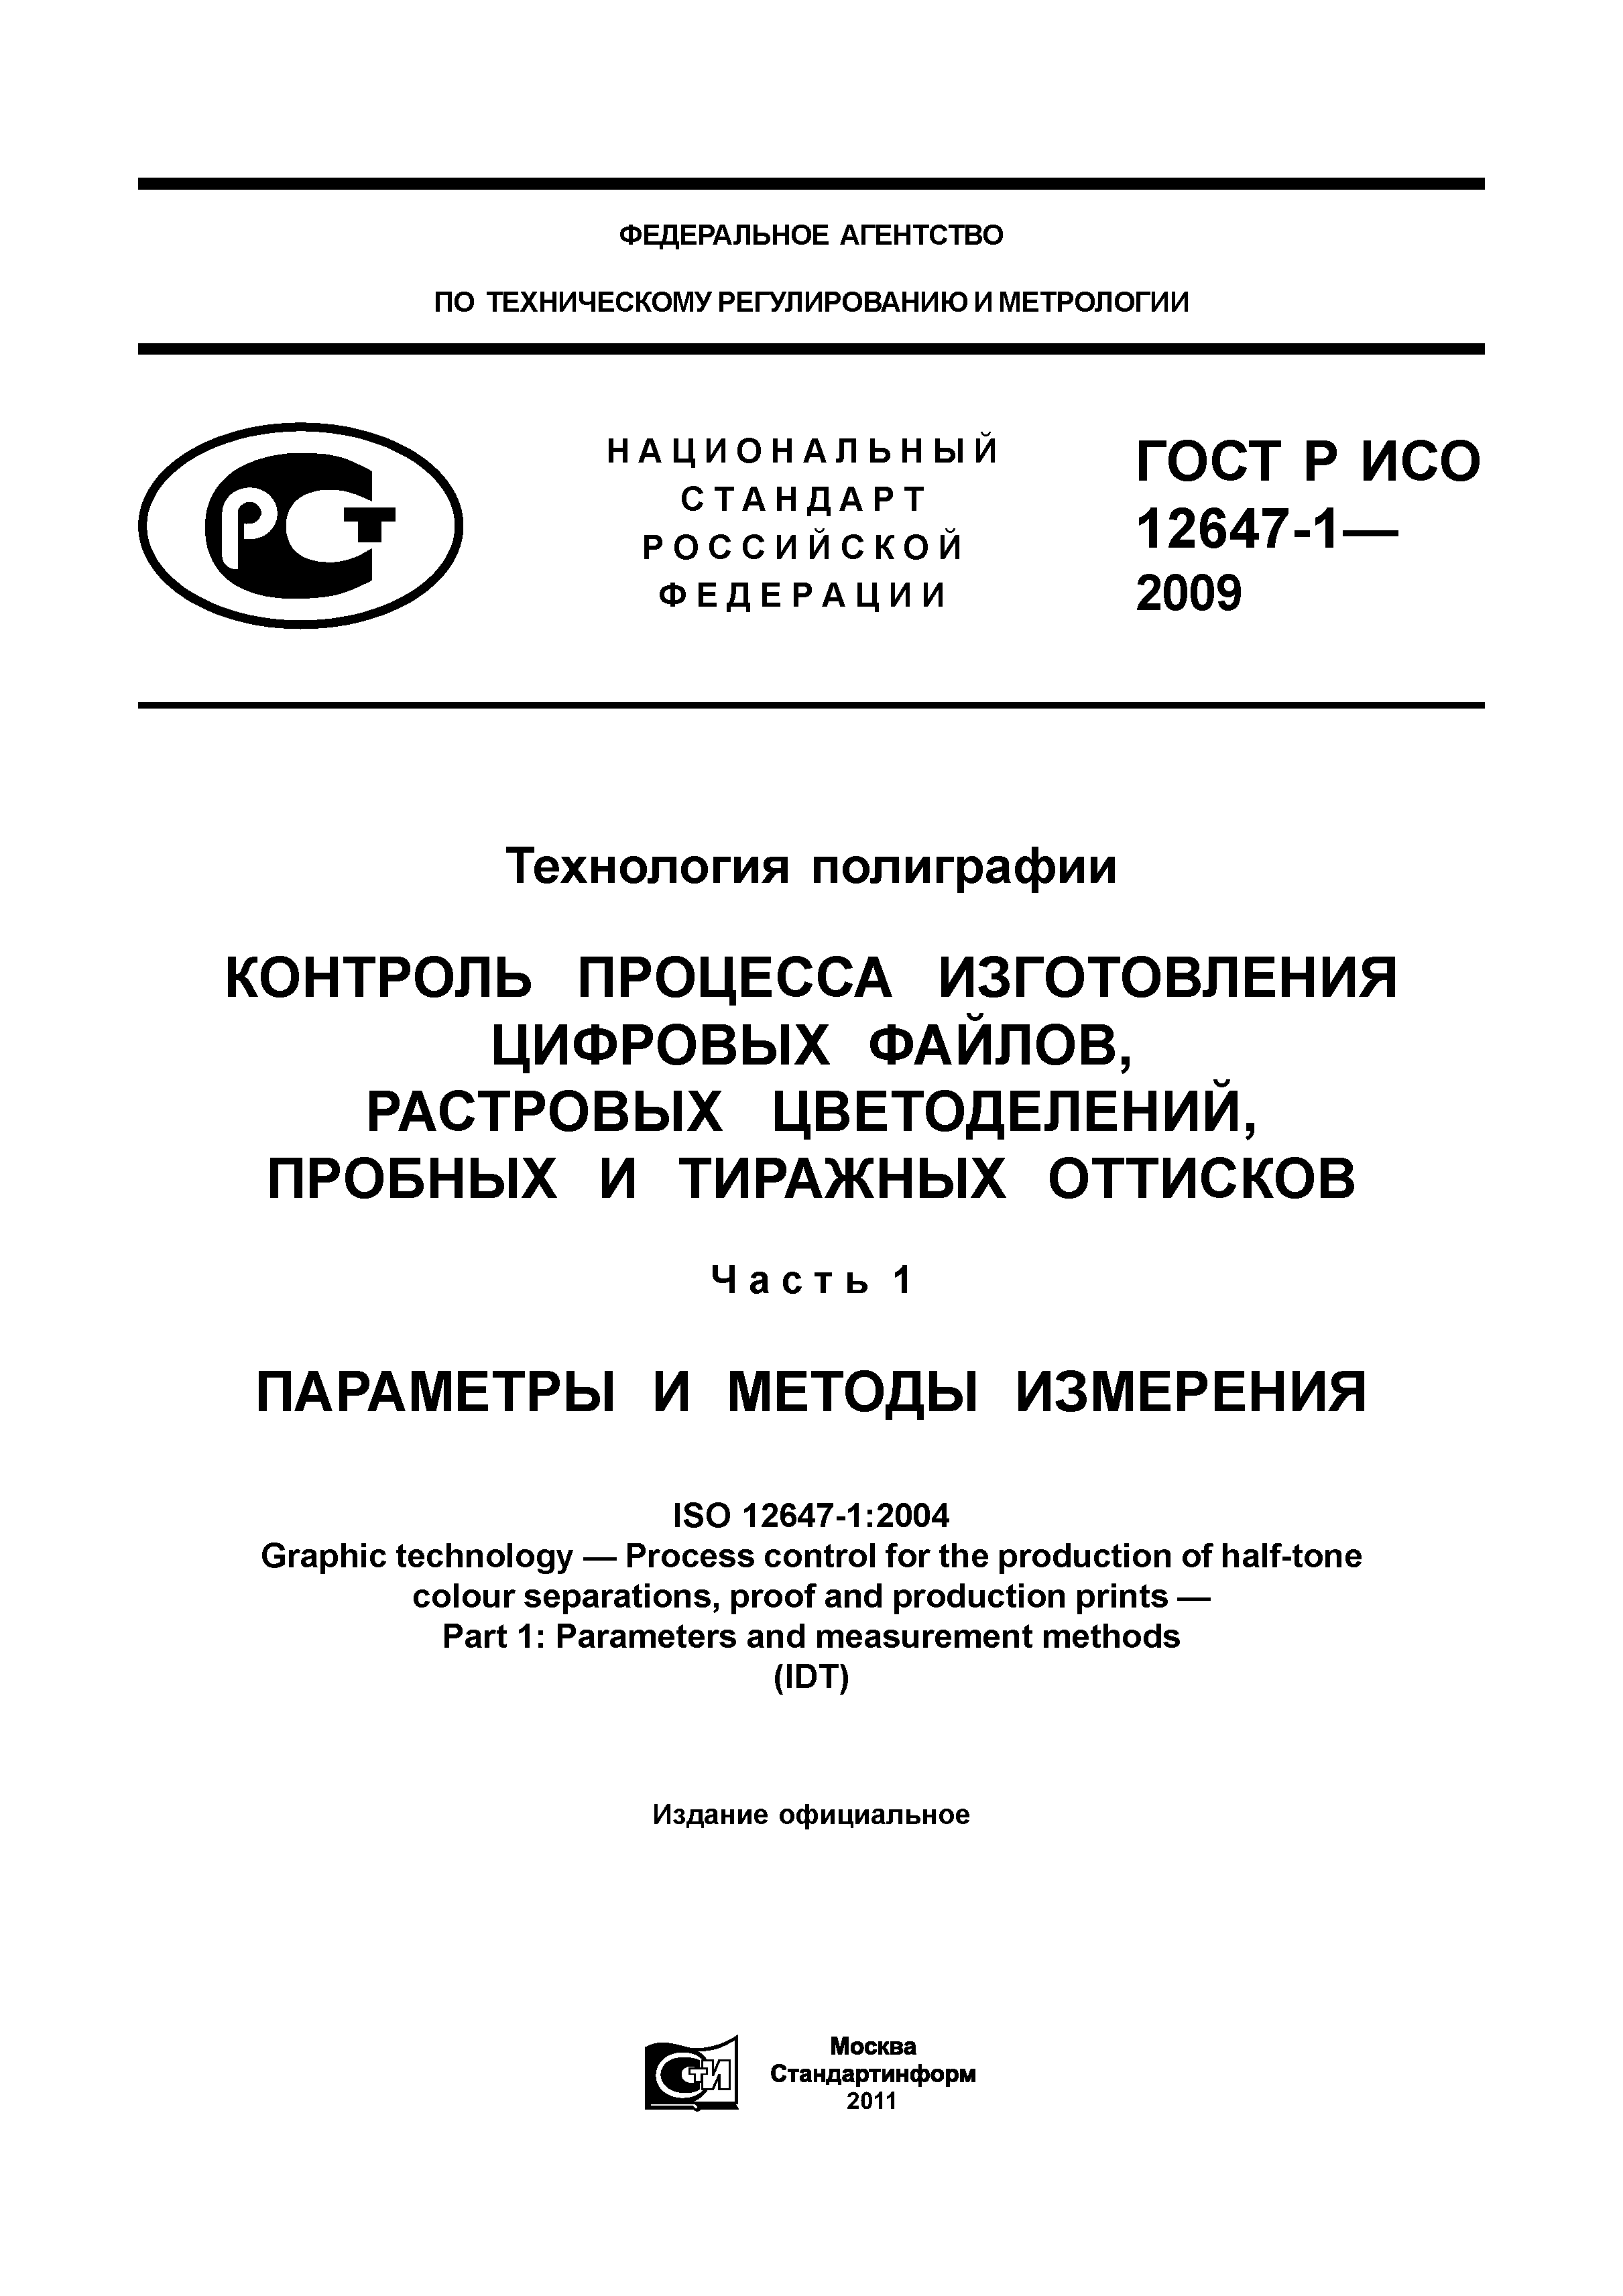 ГОСТ Р ИСО 12647-1-2009